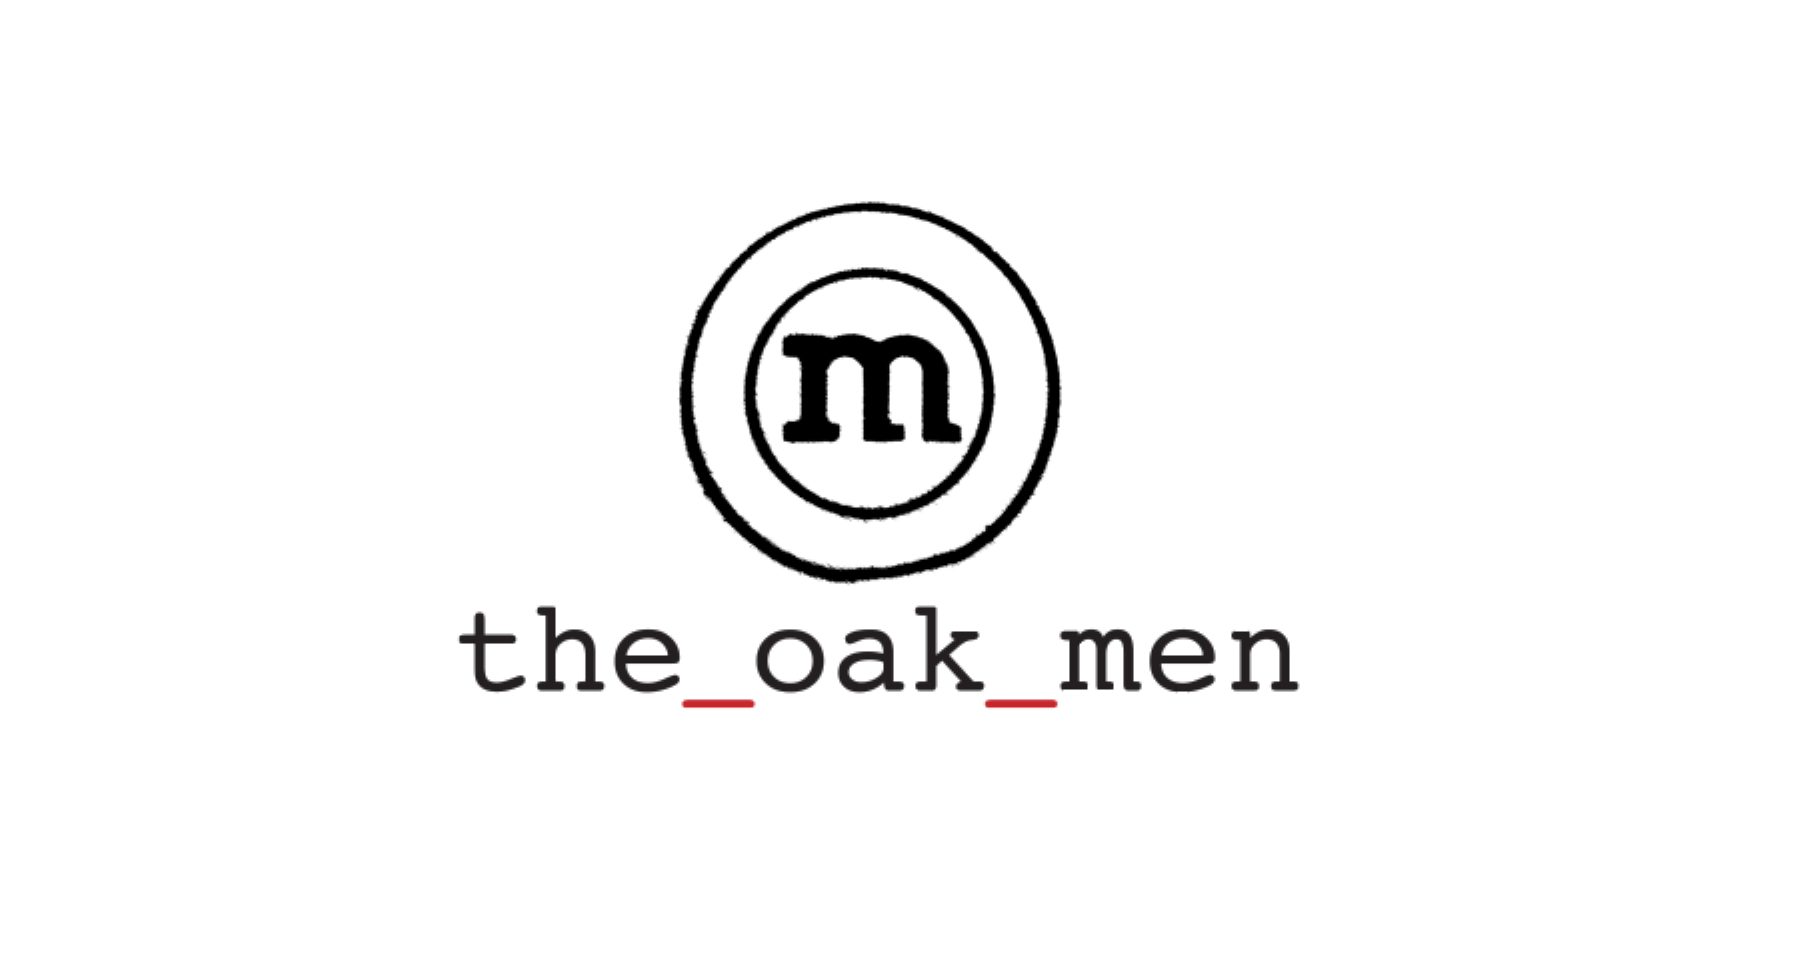 The oak men